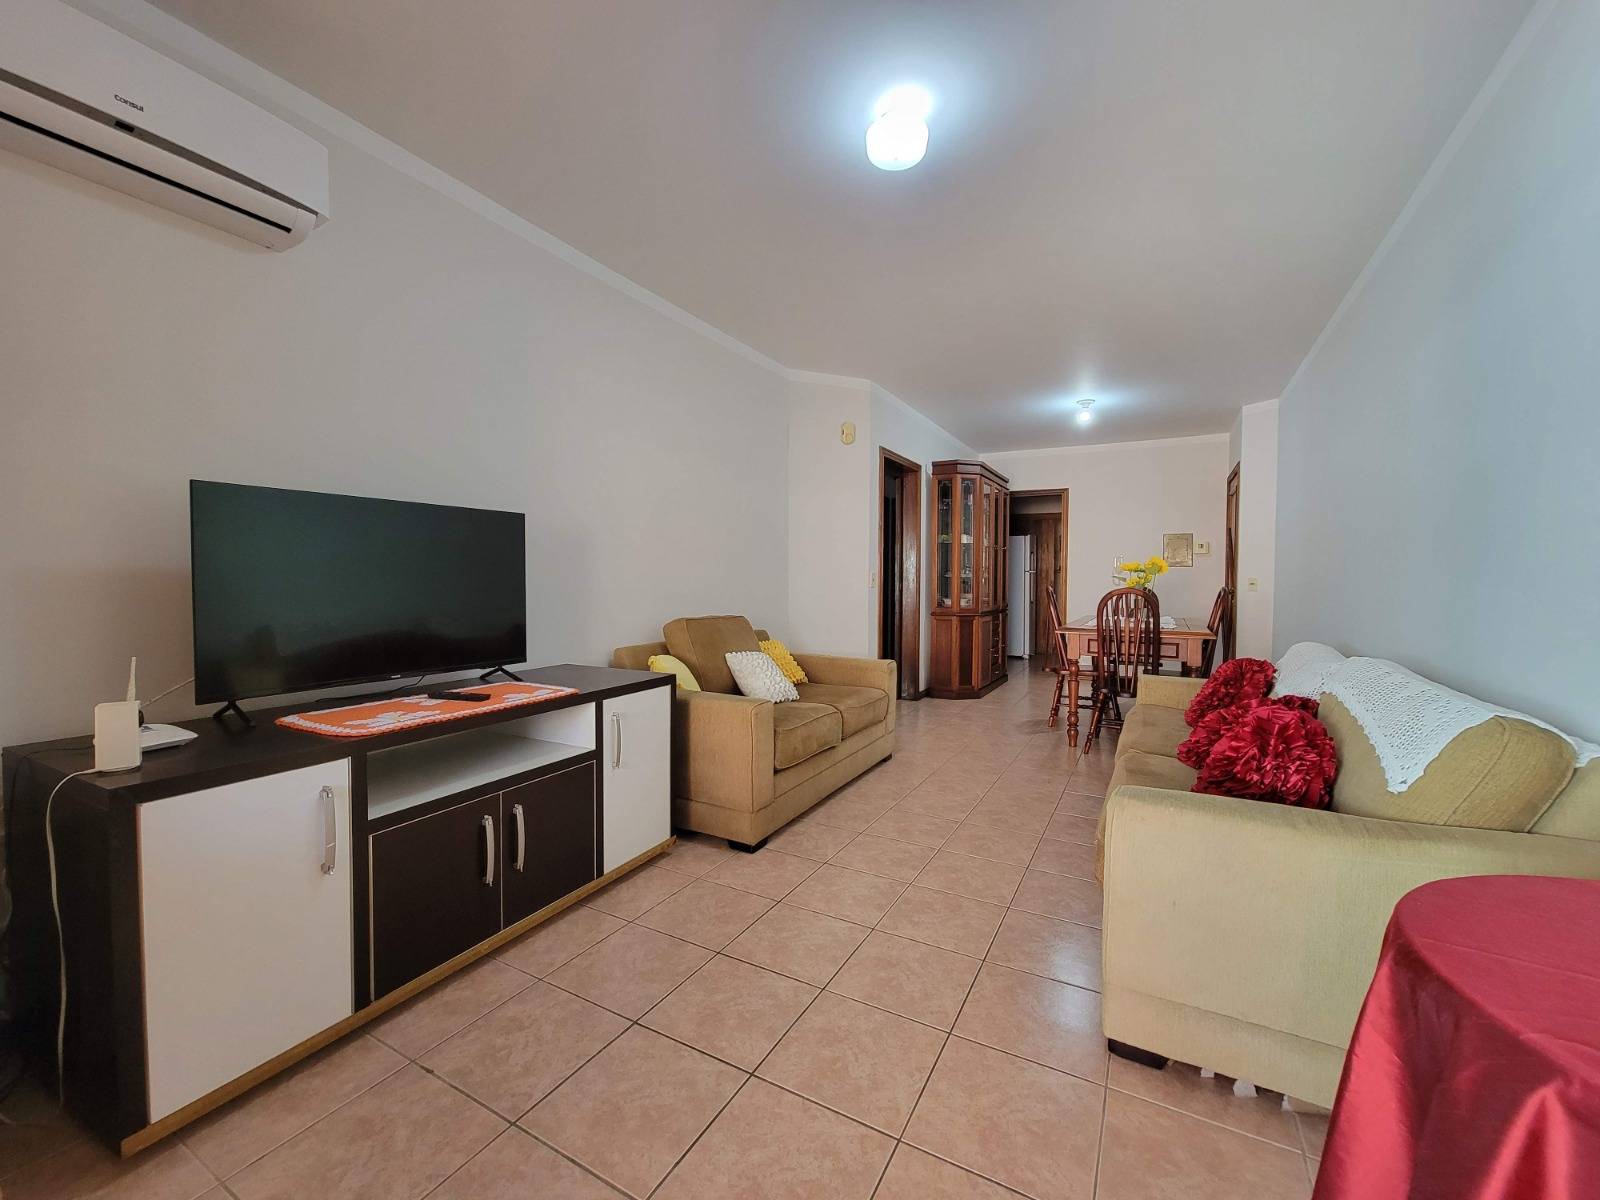 Apartamento 4 dormitórios em Capão da Canoa | Ref.: 4215